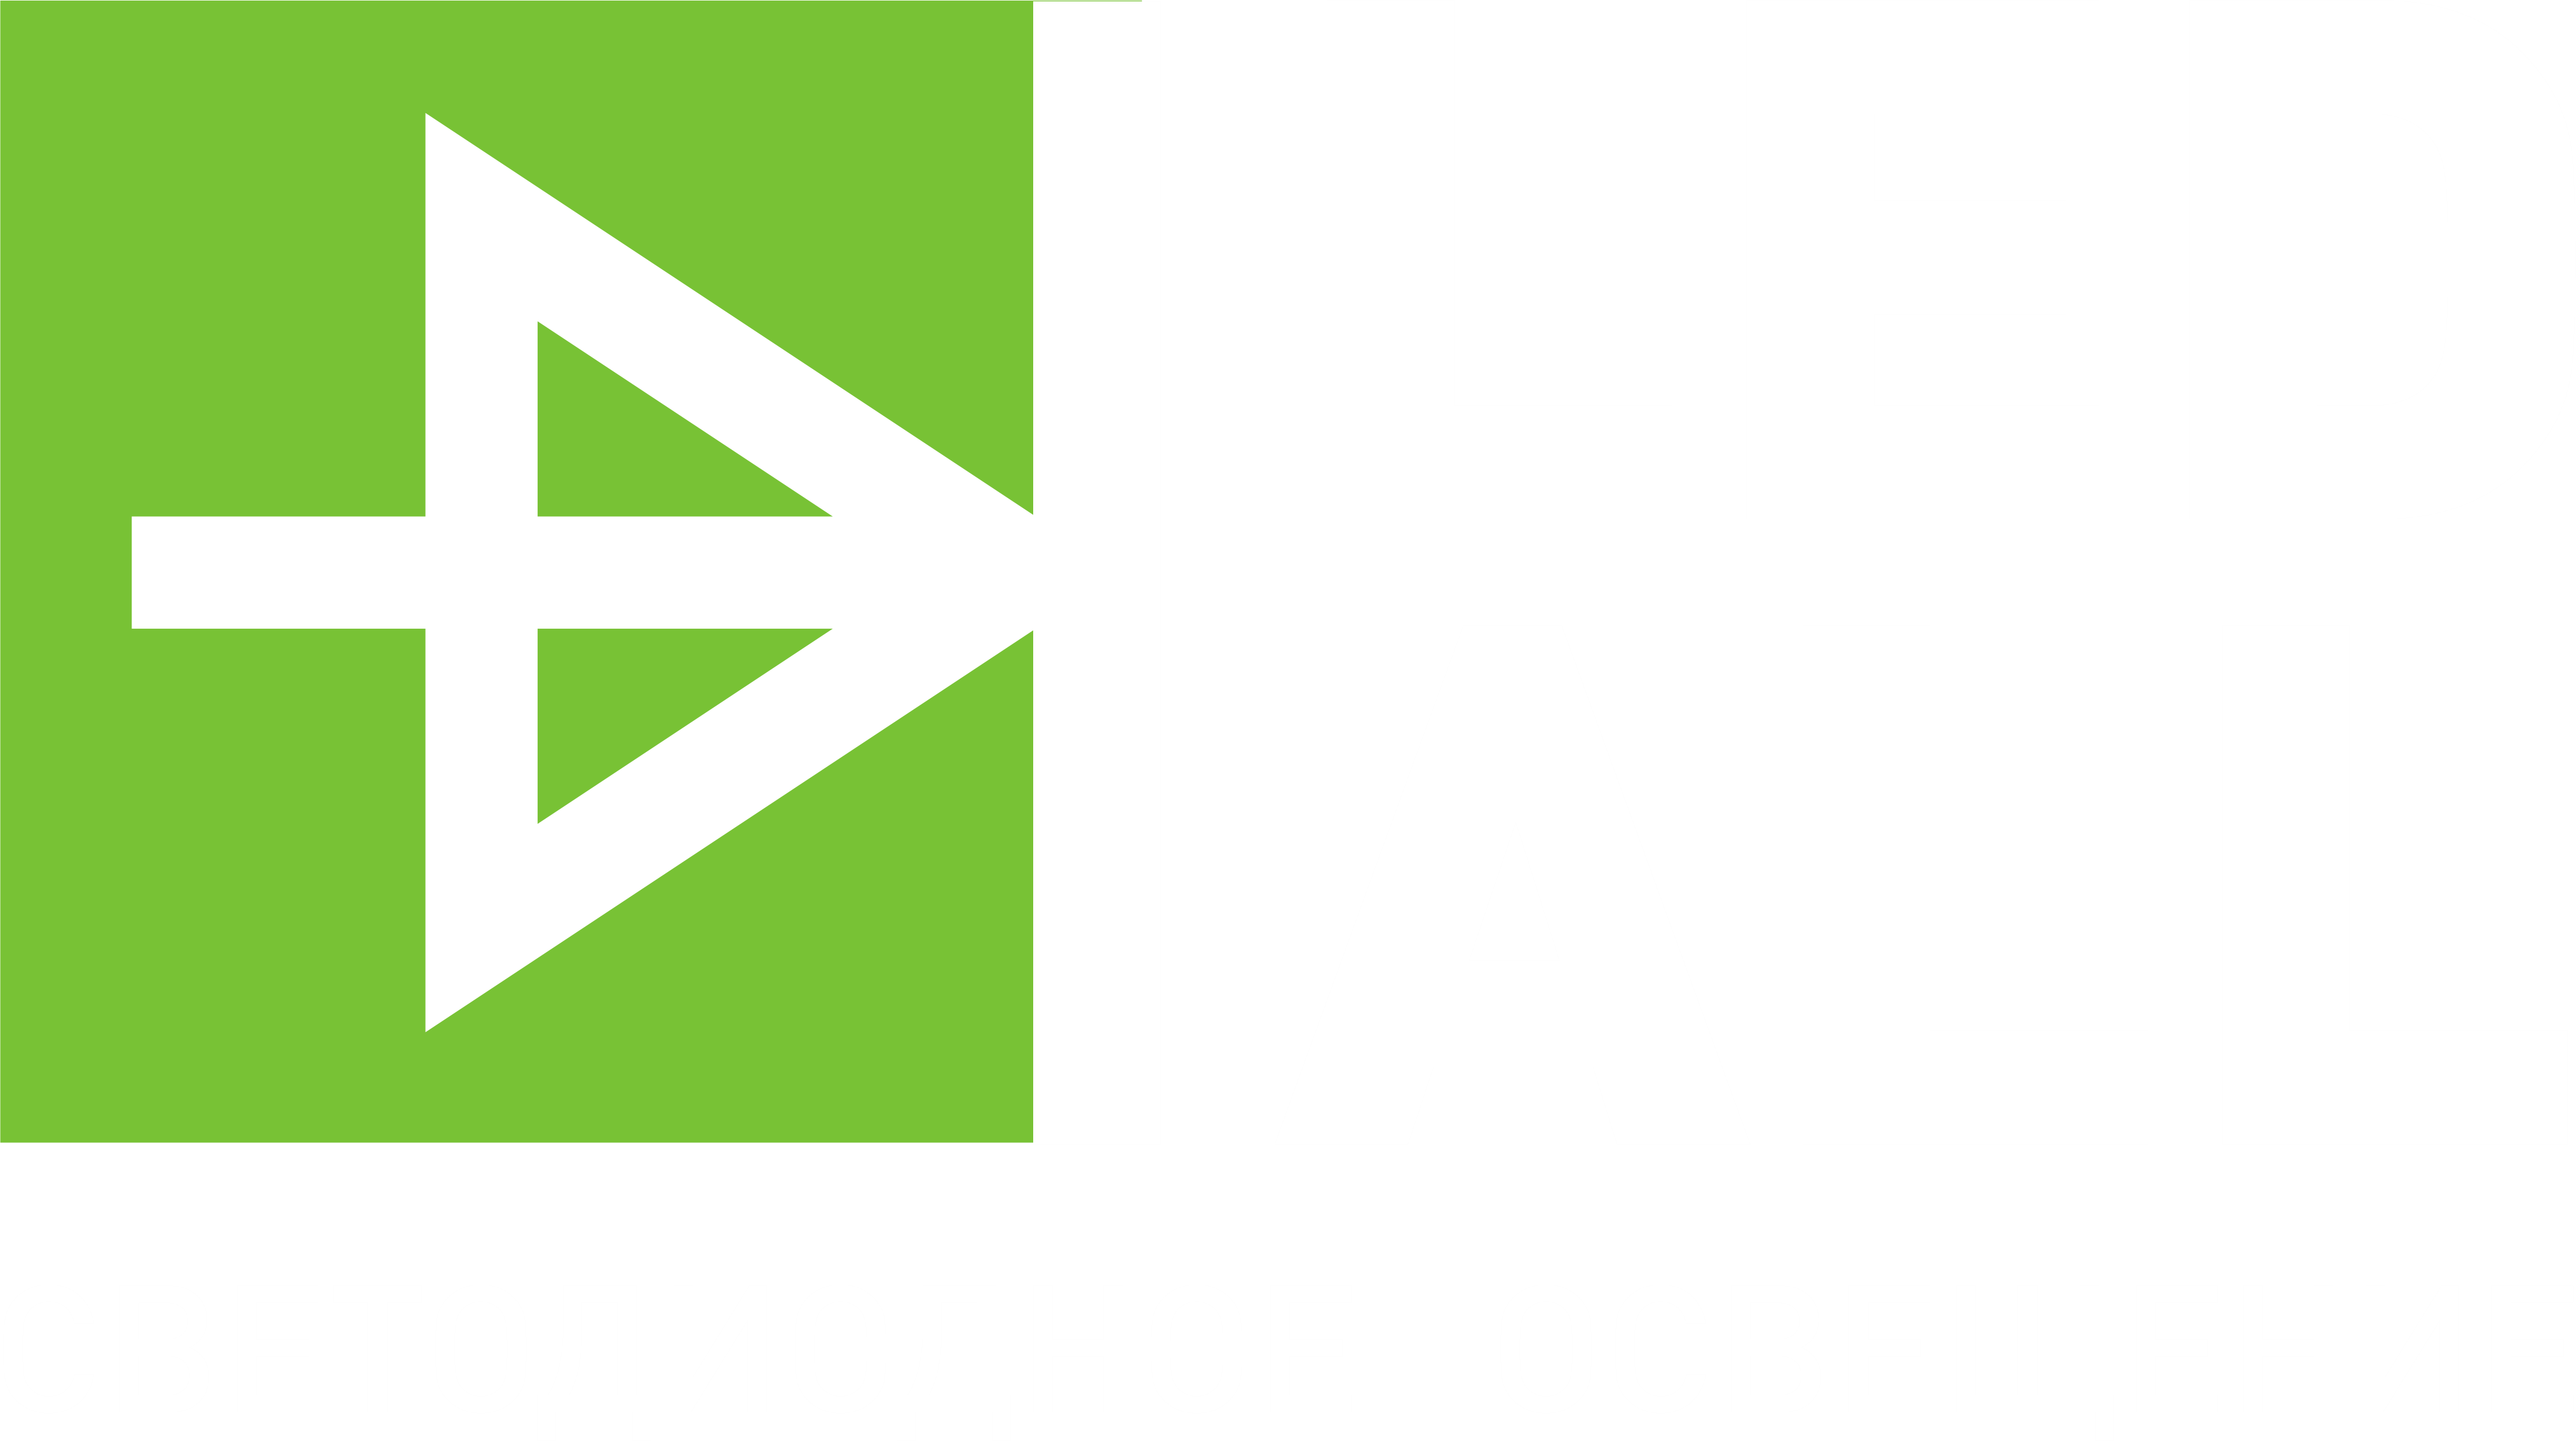 LEDALL - производитель в России светодиодного освещения для промышленности, улицы, теплицы, склада, двора, парка, жкх, офиса, освещения дорог, торгового зала, корта, павильона